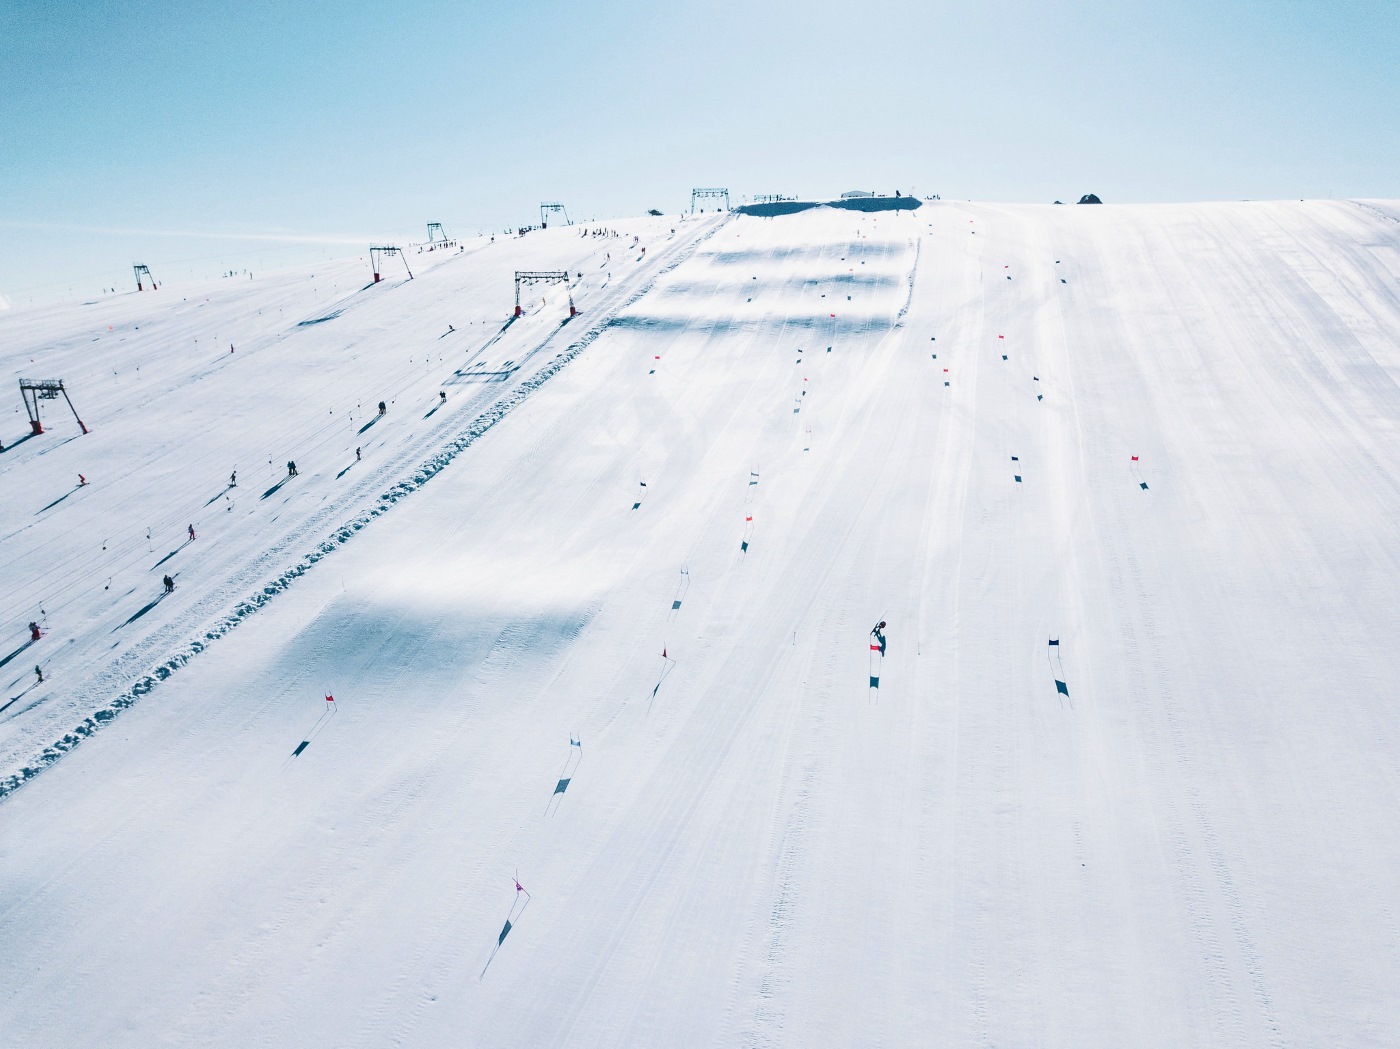 Les 2 Alpes abrirá el esquí de verano el próximo sábado 29 con 300 cm de nieve acumulada